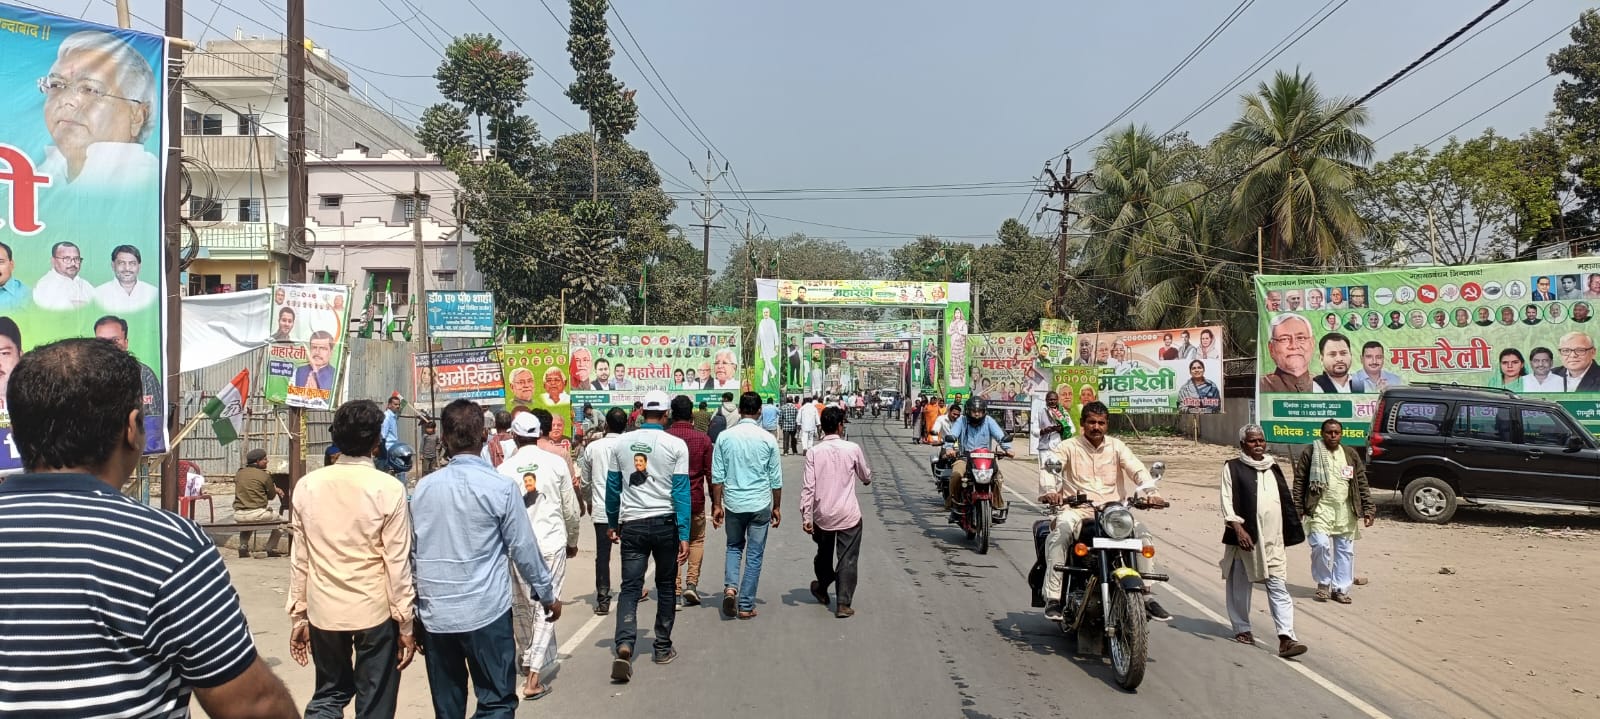 Purnia Mahagathbandhan Rally: 
पूर्णिया रैली में महागठबंधन ने मुस्लिम वोटों पर साधा निशाना, पढ़ें खास बात